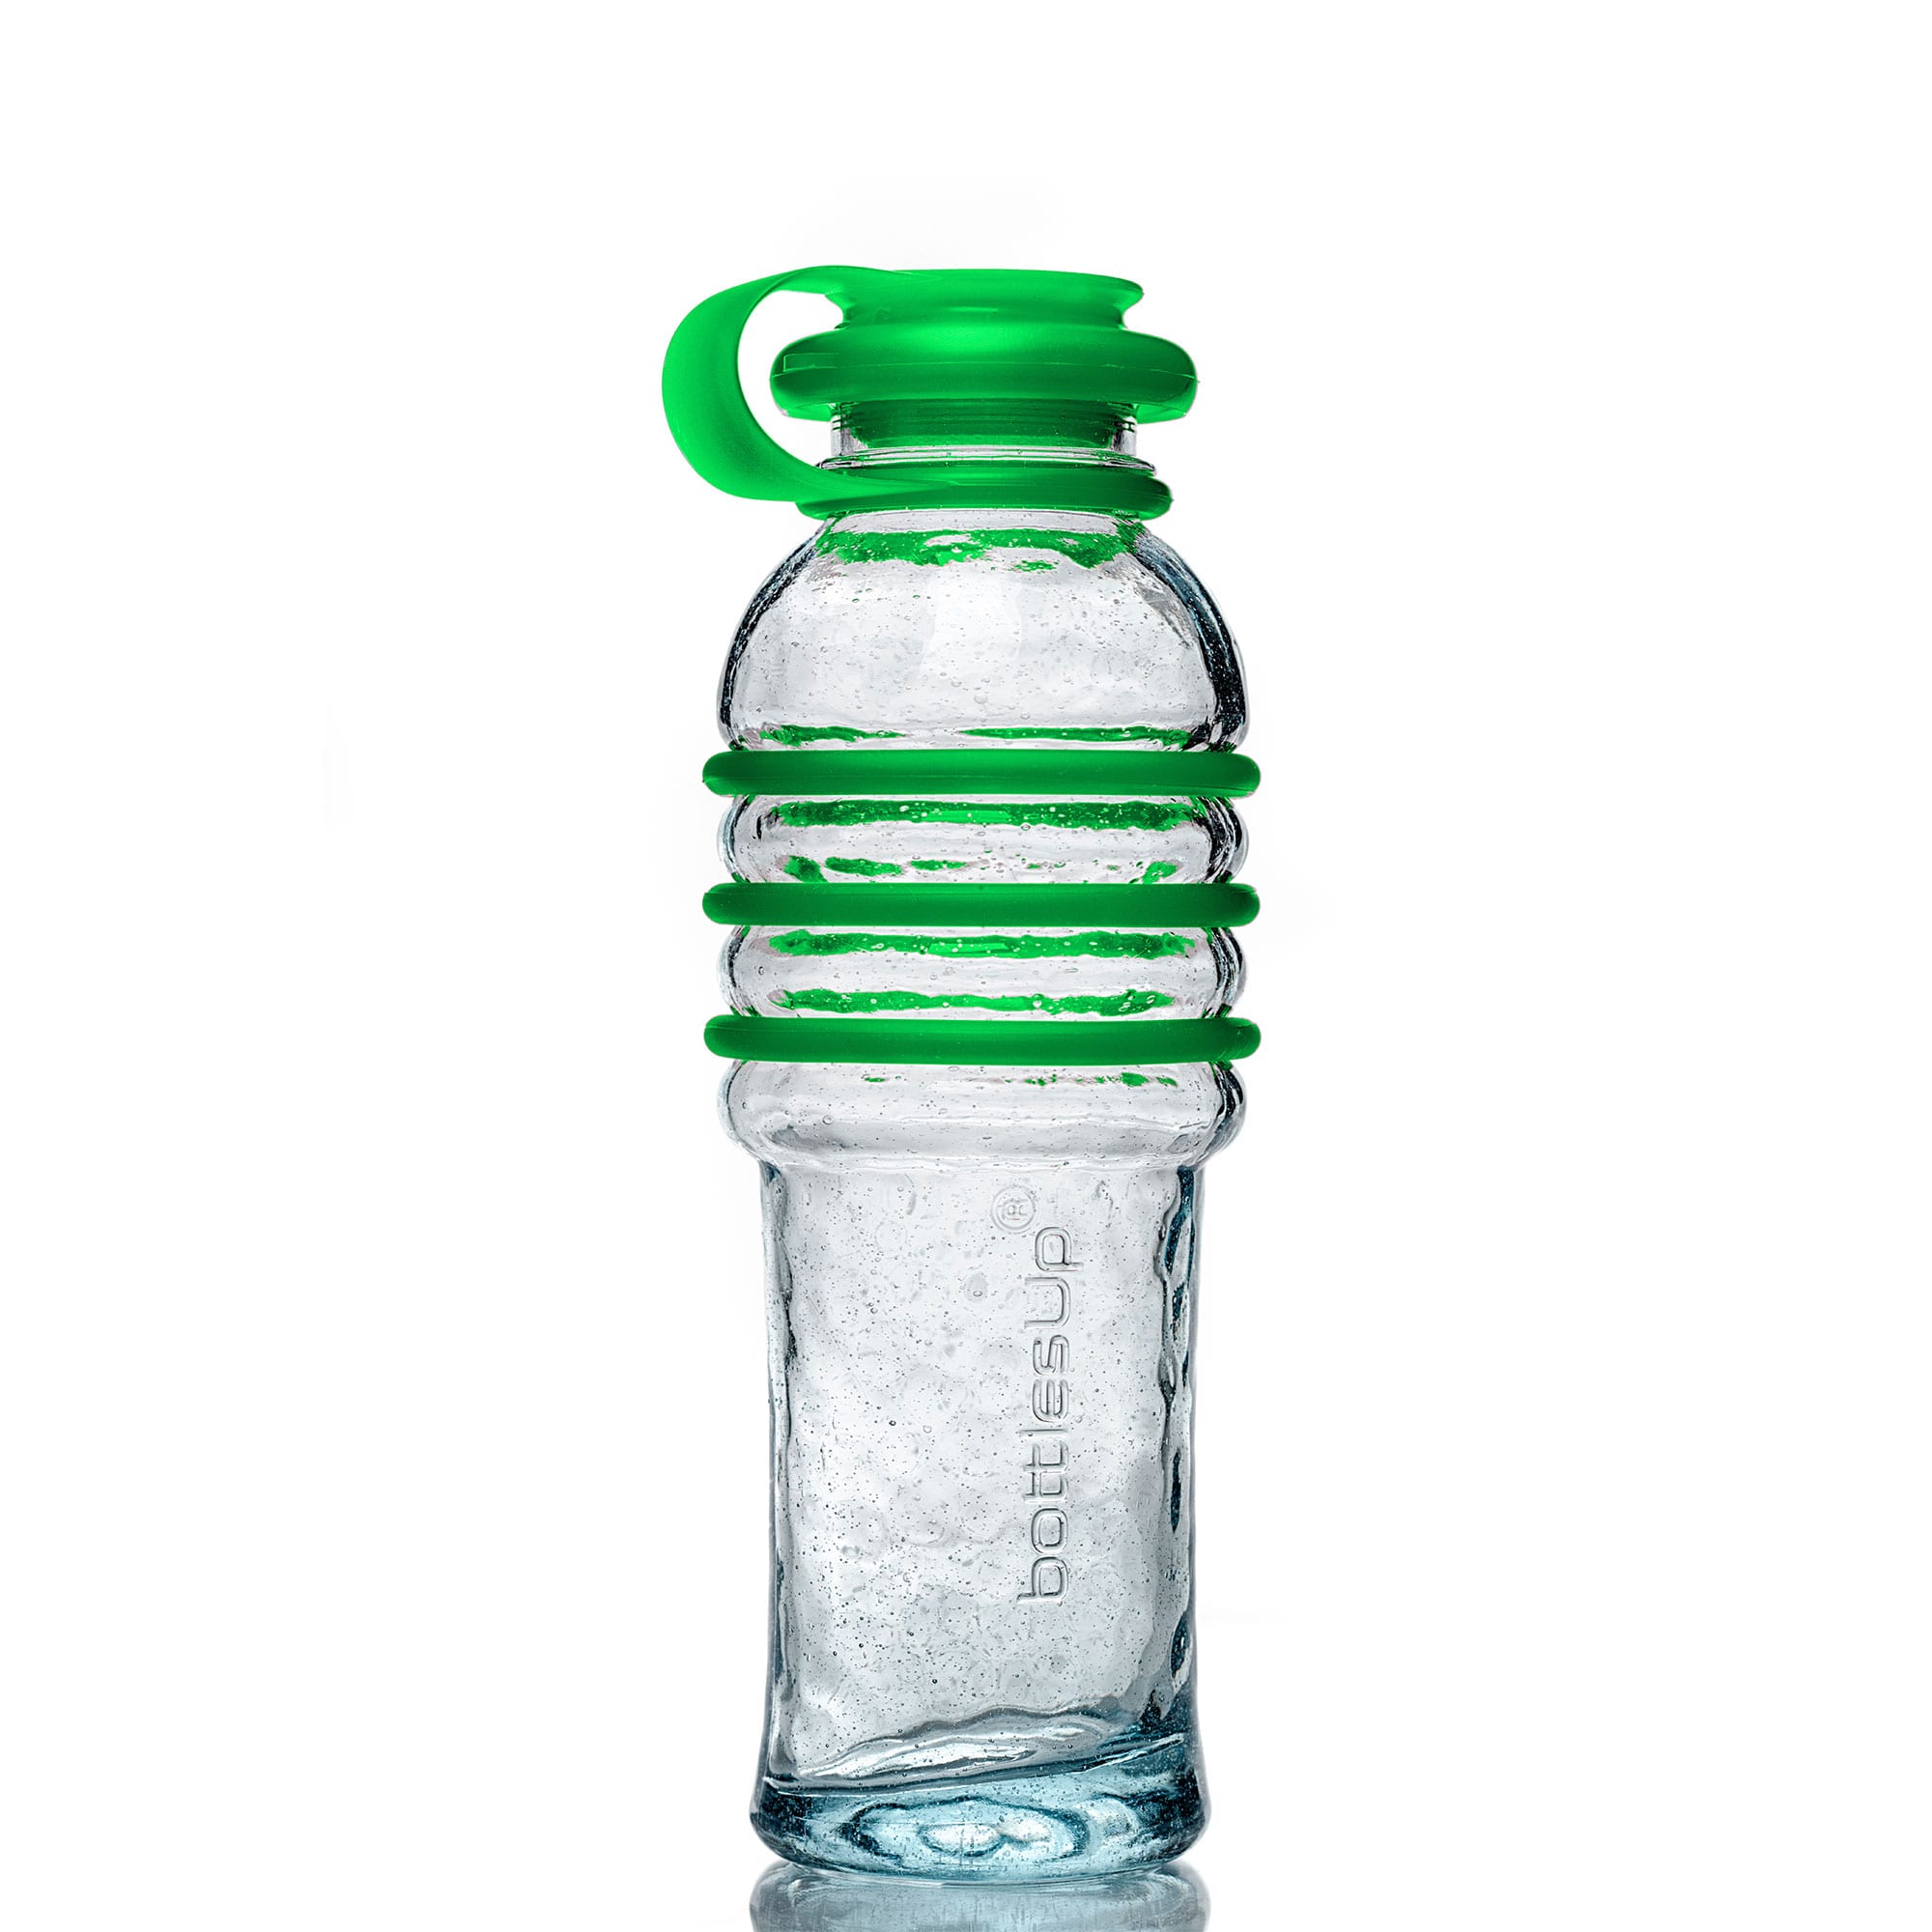 https://www.bottlesupglass.com/wp-content/uploads/2020/11/16oz-green-cap.jpg